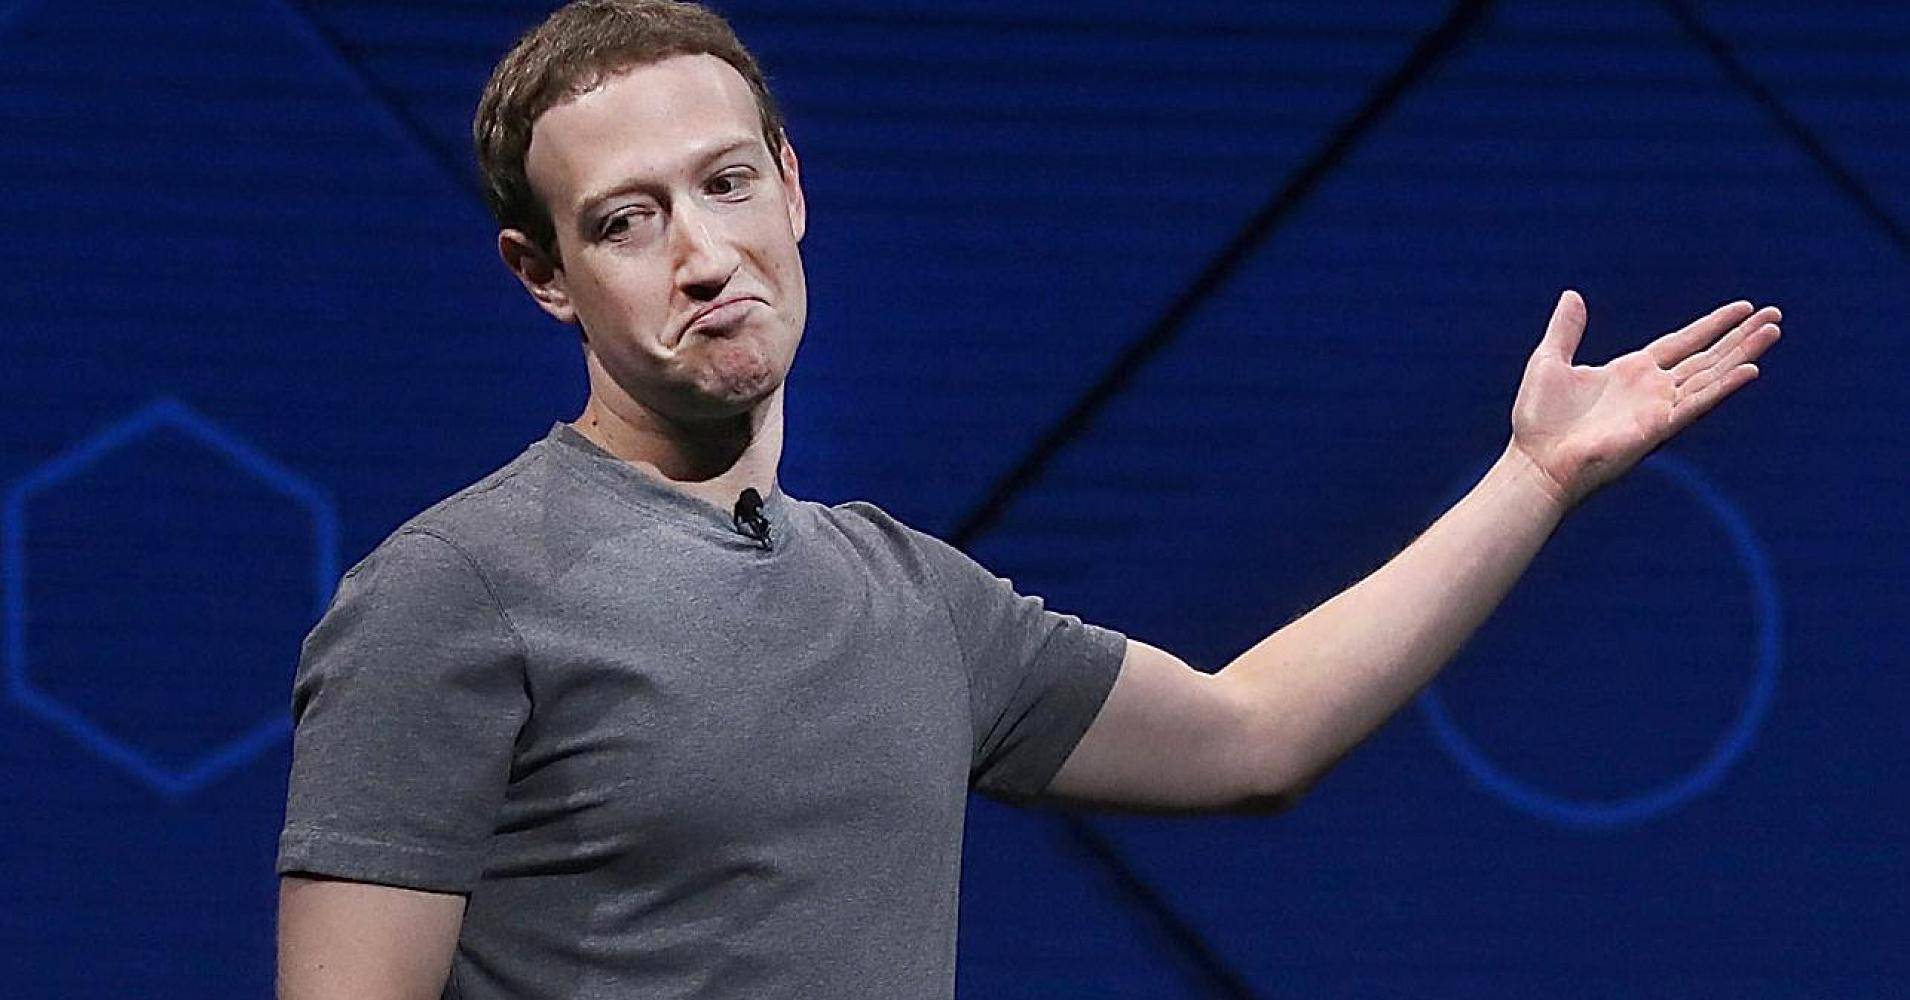 Facebook, Zuckerberg costretto a scusarsi ancora con gli utenti